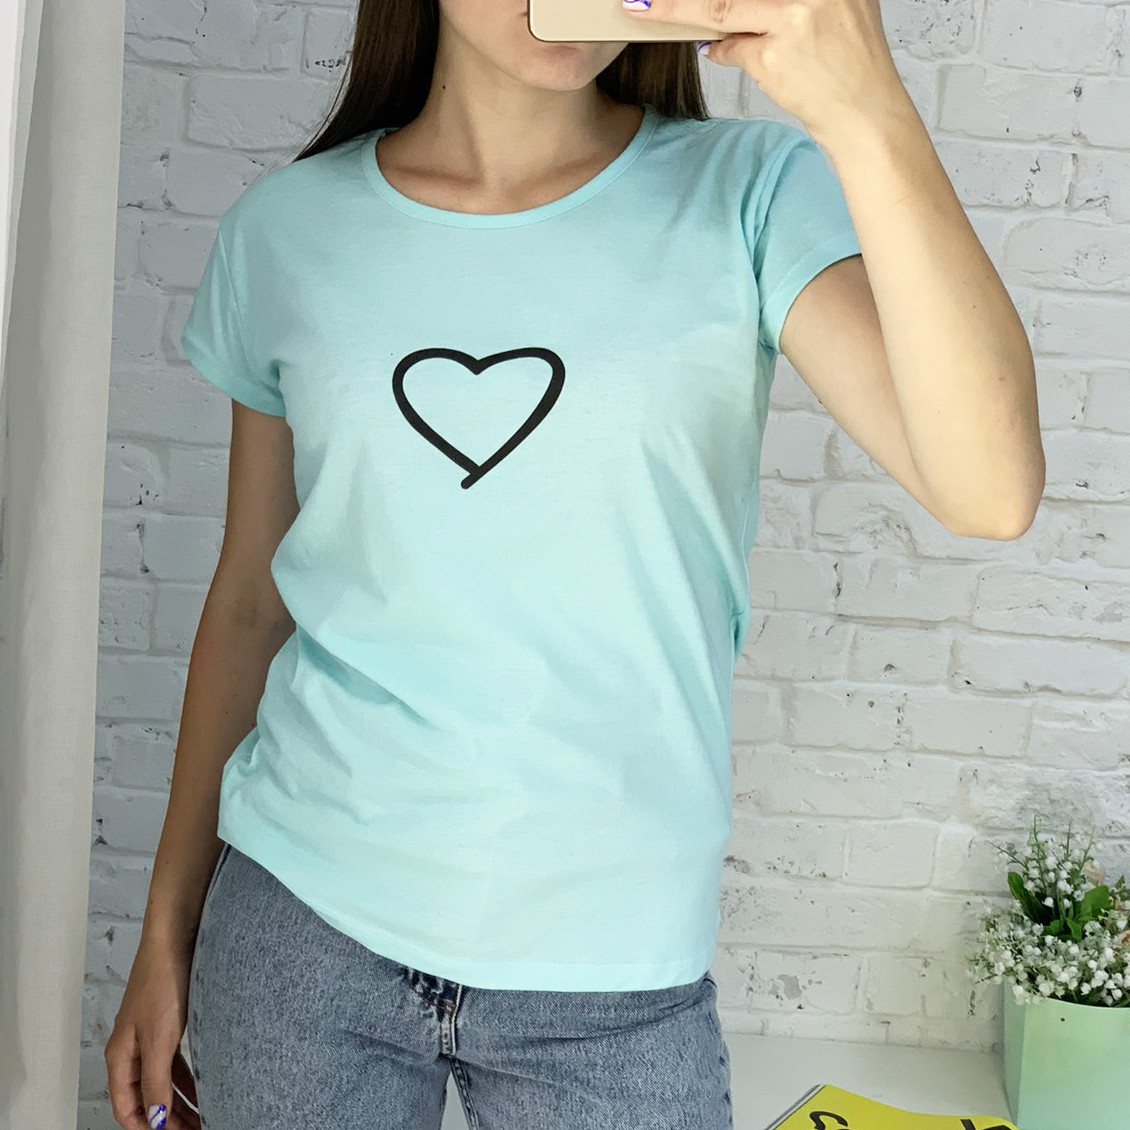 7029-4 БИРЮЗОВАЯ футболка женская с принтом (3 ед. размеры : M.L.XL)